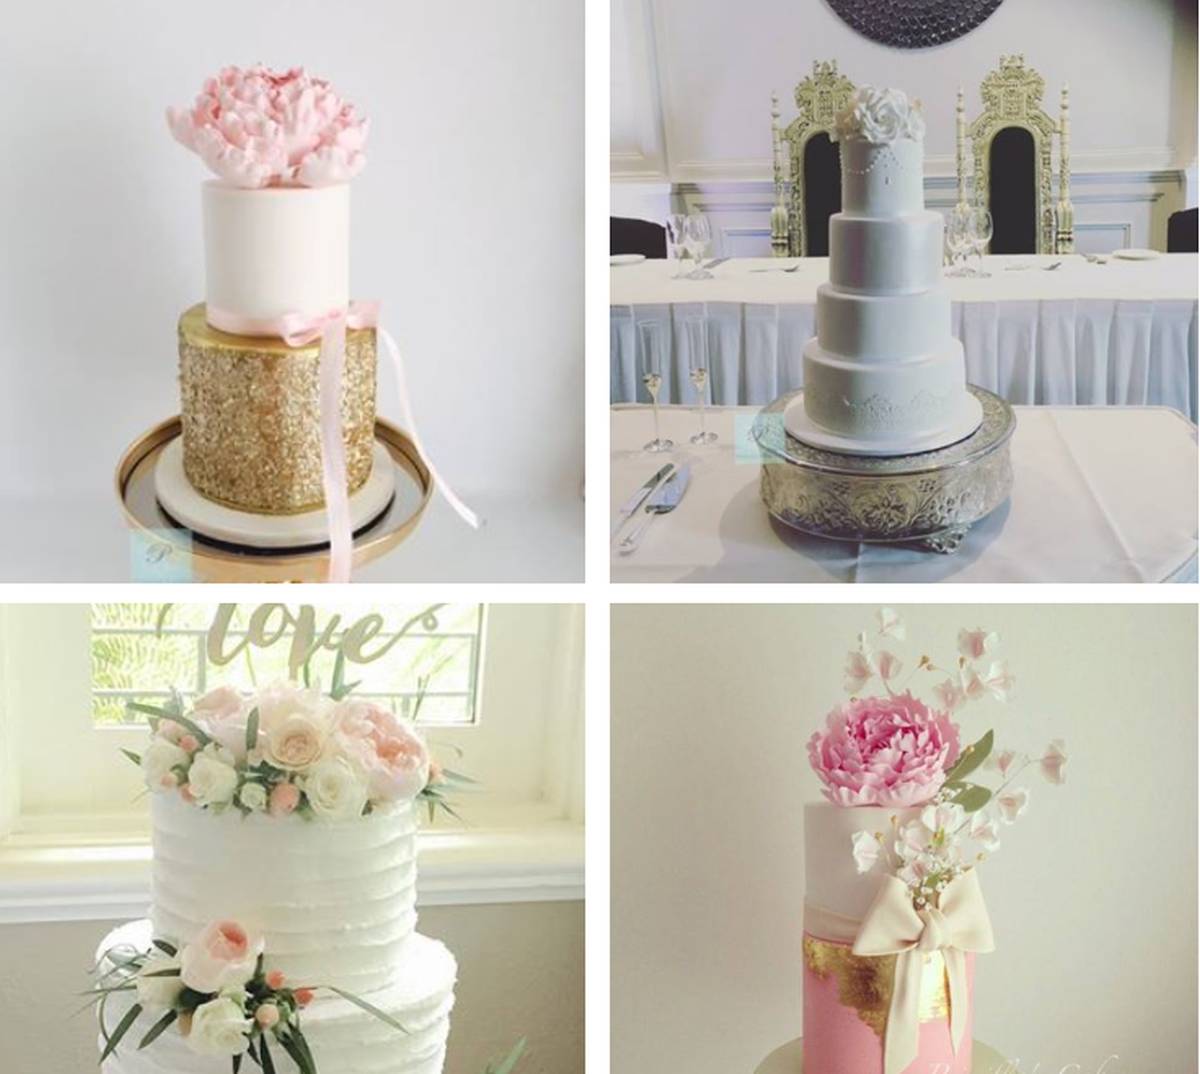 Priscilla's Cakes wedding custom cakes